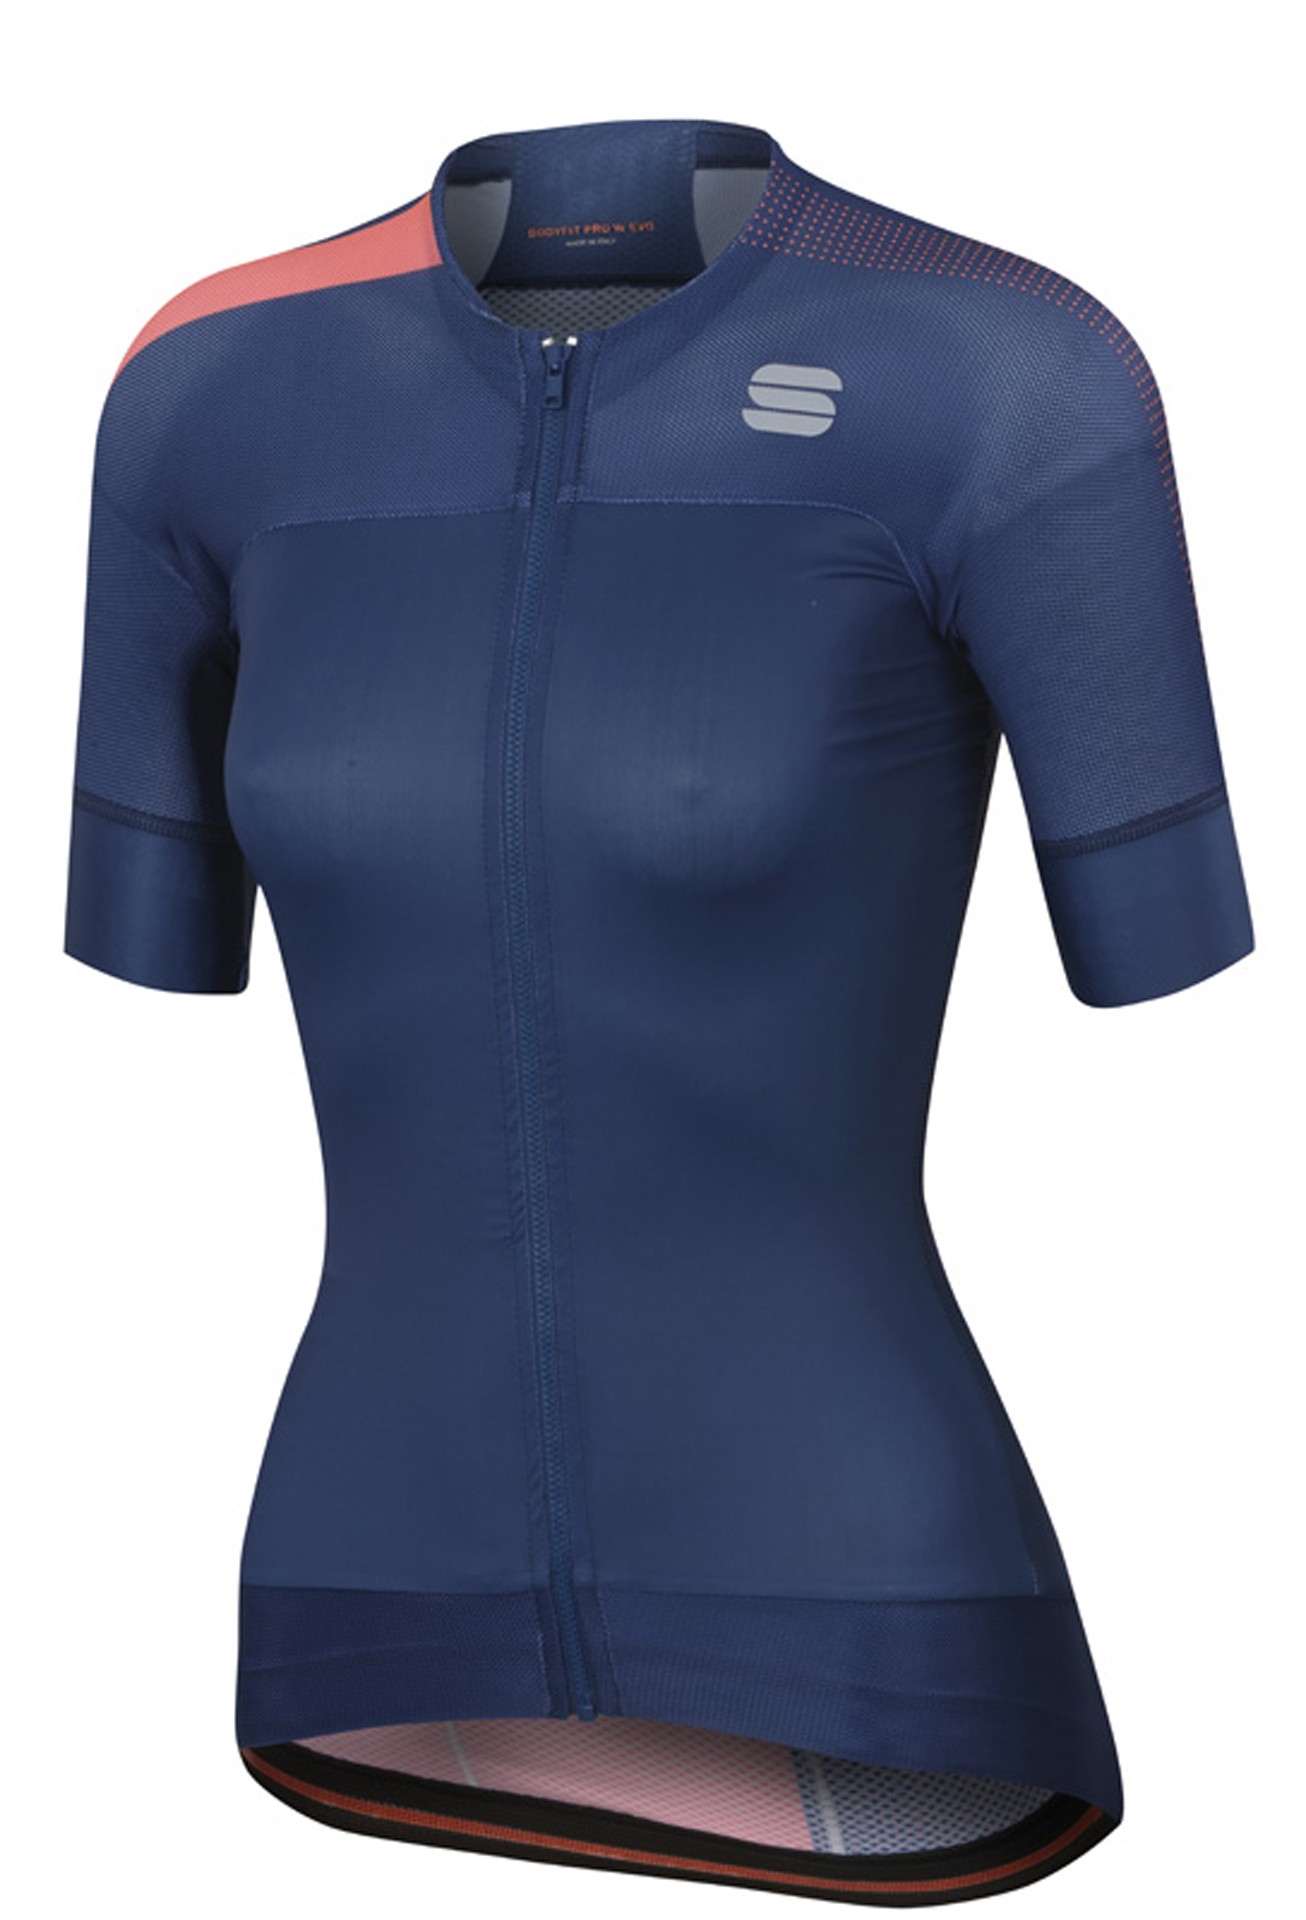 Sportful bodyfit pro w evo maillot de cyclisme manches courtes femme twilight bleu fluo coral